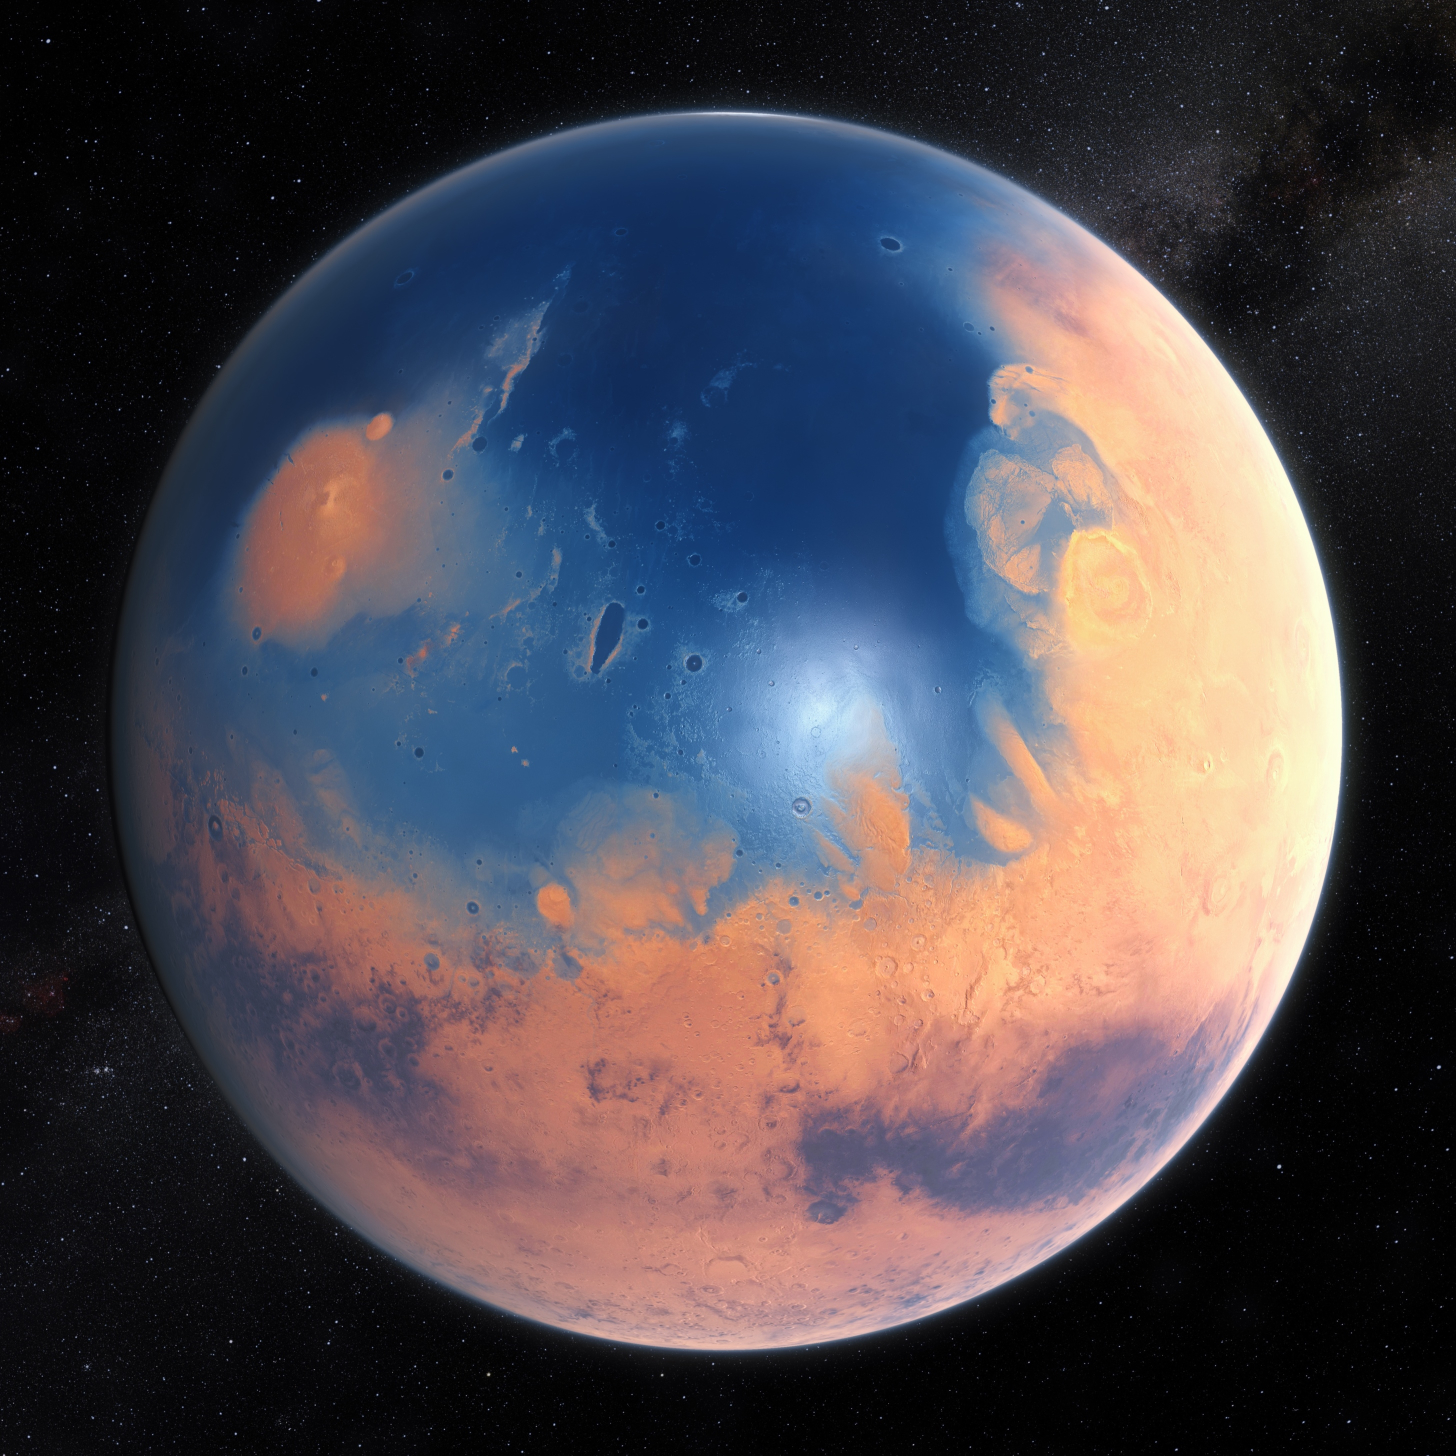 Umjetnički prikaz Marsa kako je izgledao prije 4 milijarde godina kad je imao površinsku tekuću vodu (©NASA).